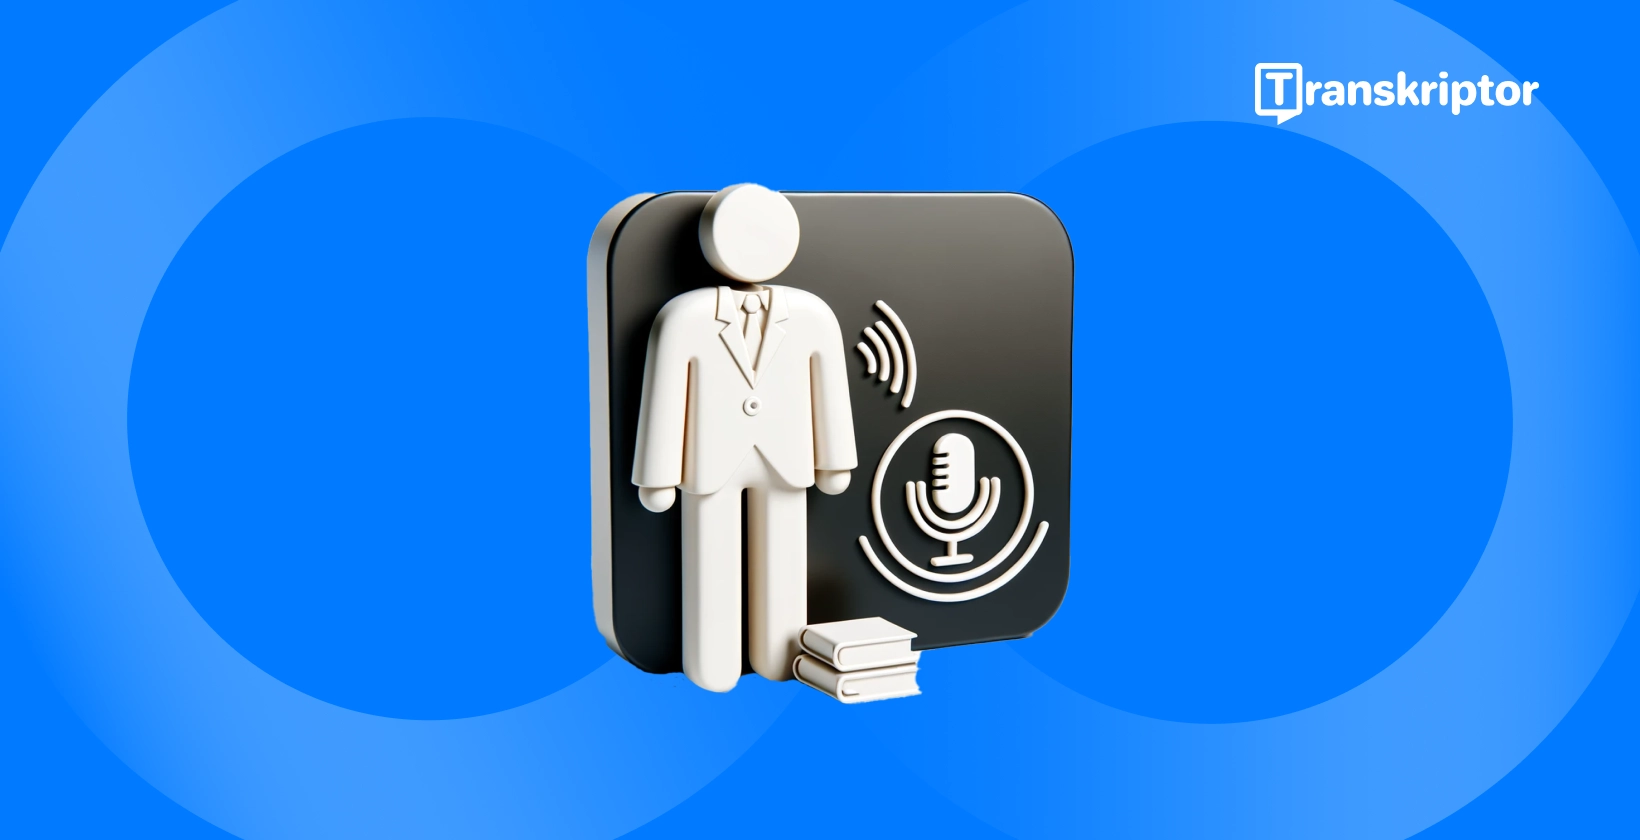 Reconhecimento de fala, mostrando uma figura com microfone e ondas sonoras, para tecnologia de processamento de áudio.